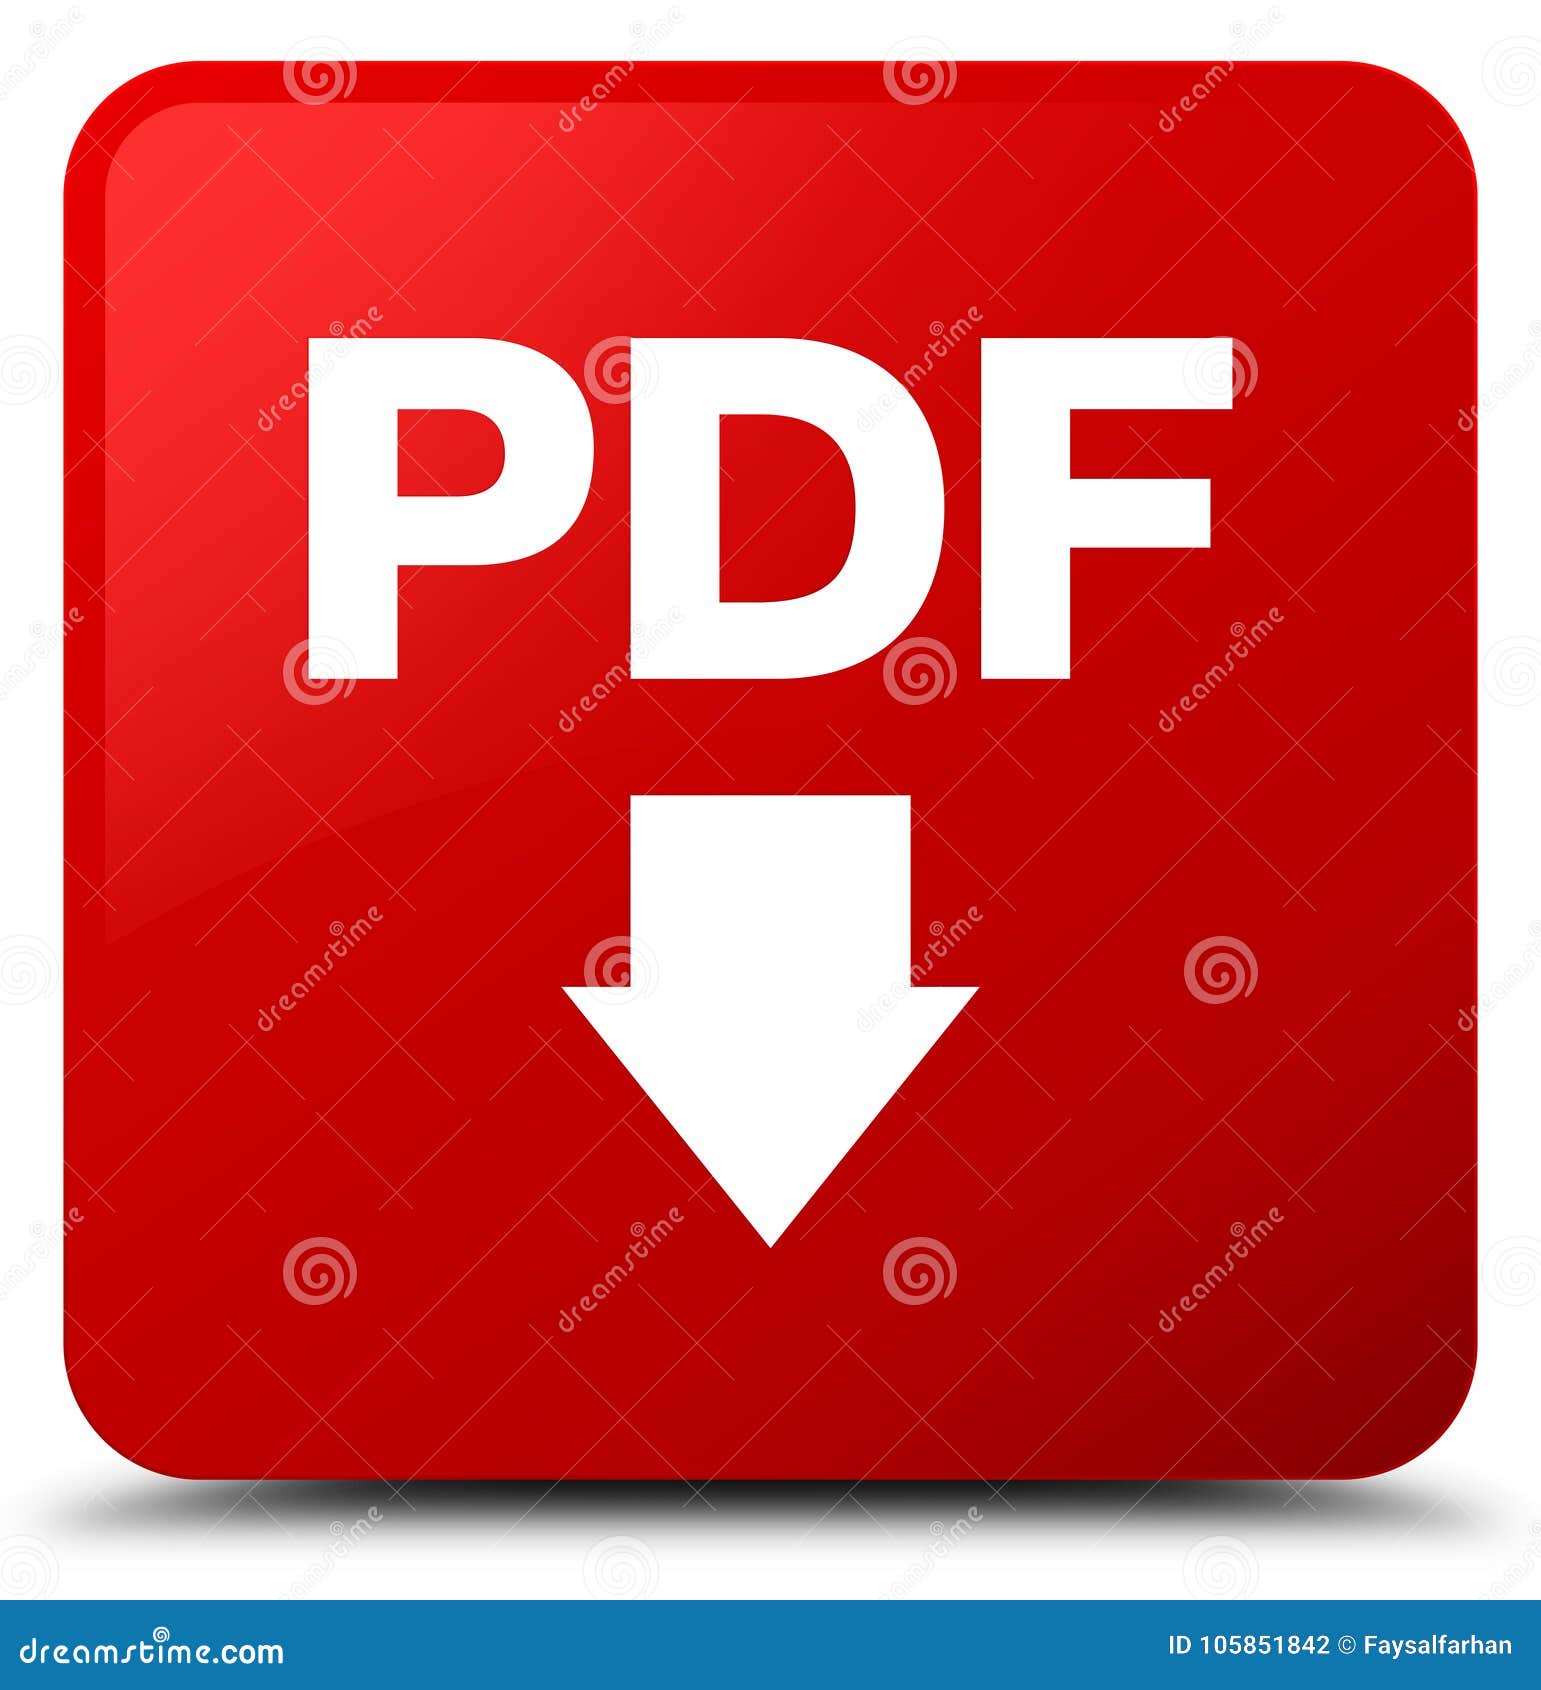 pdf download icon red square button